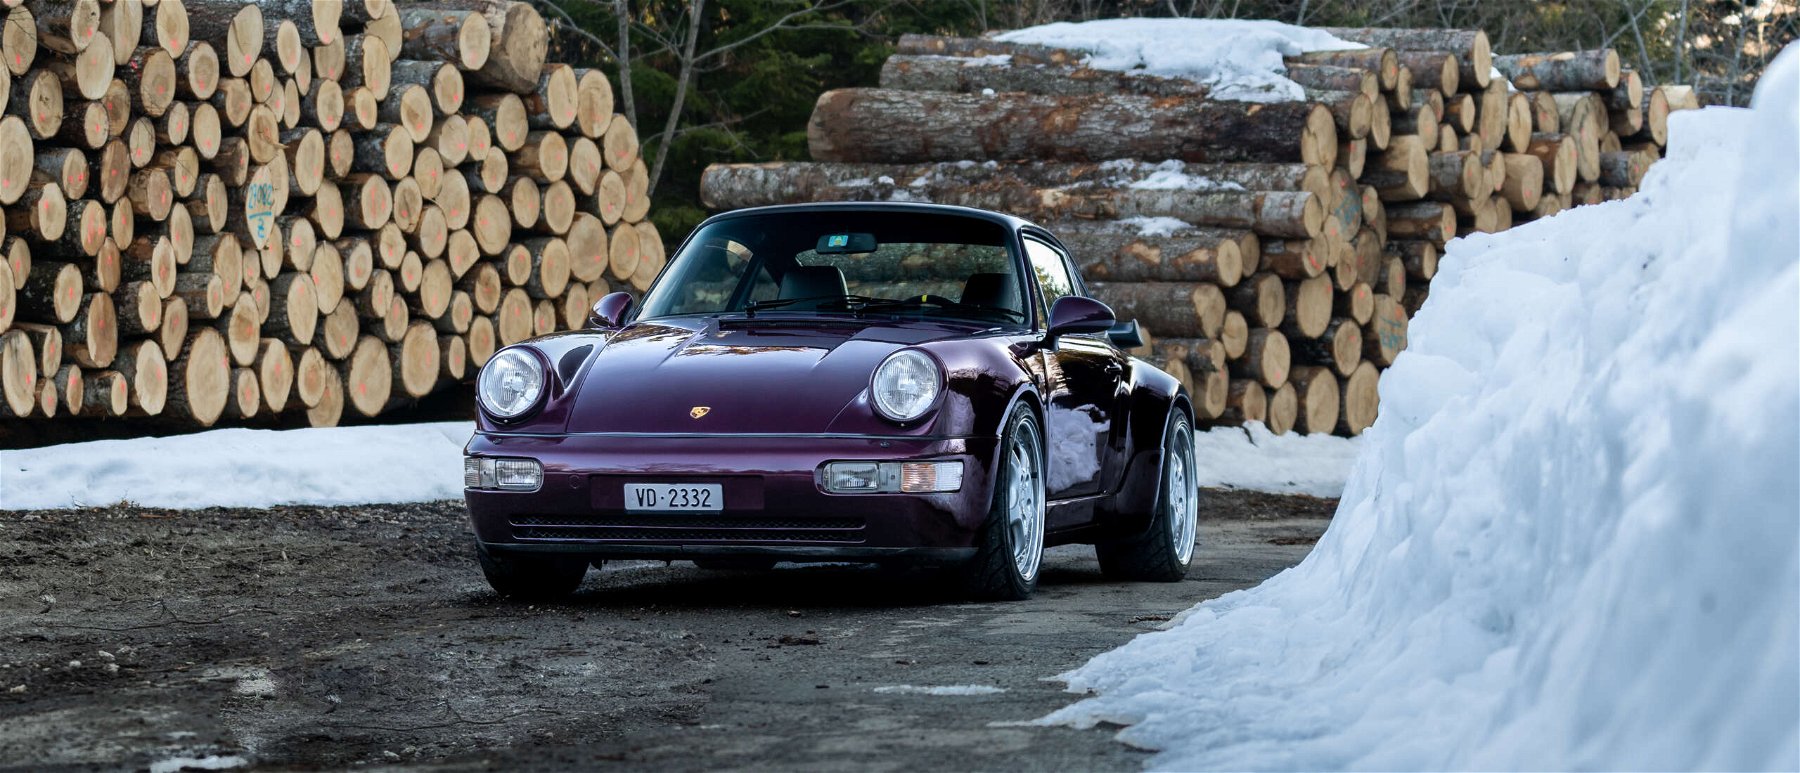 Leidenschaft für Autos ist erblich – Maxime und seine Liebe zu Porsche